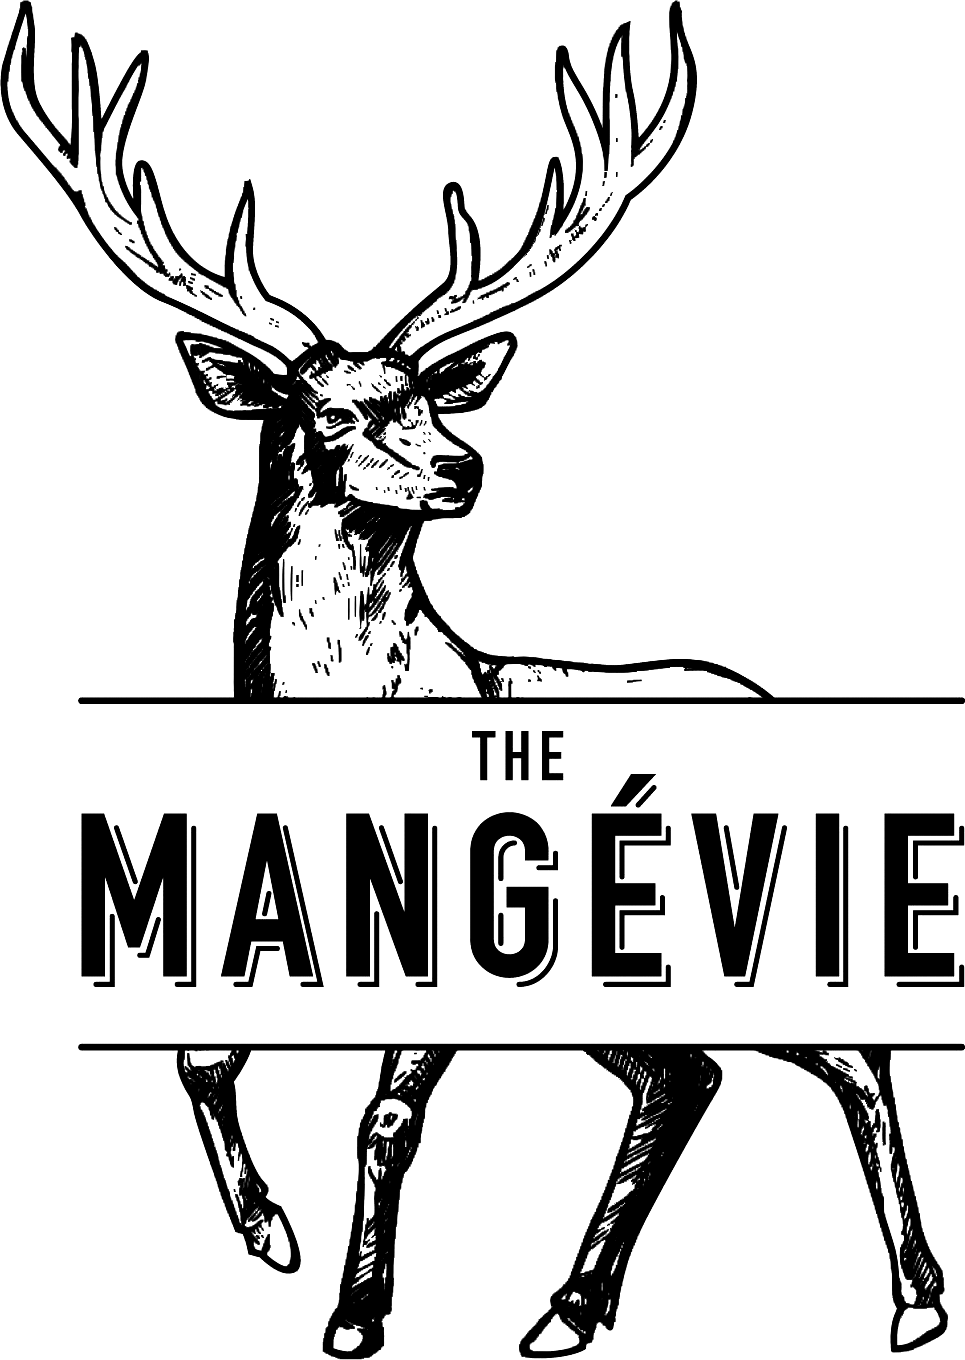 The Mangévie logo